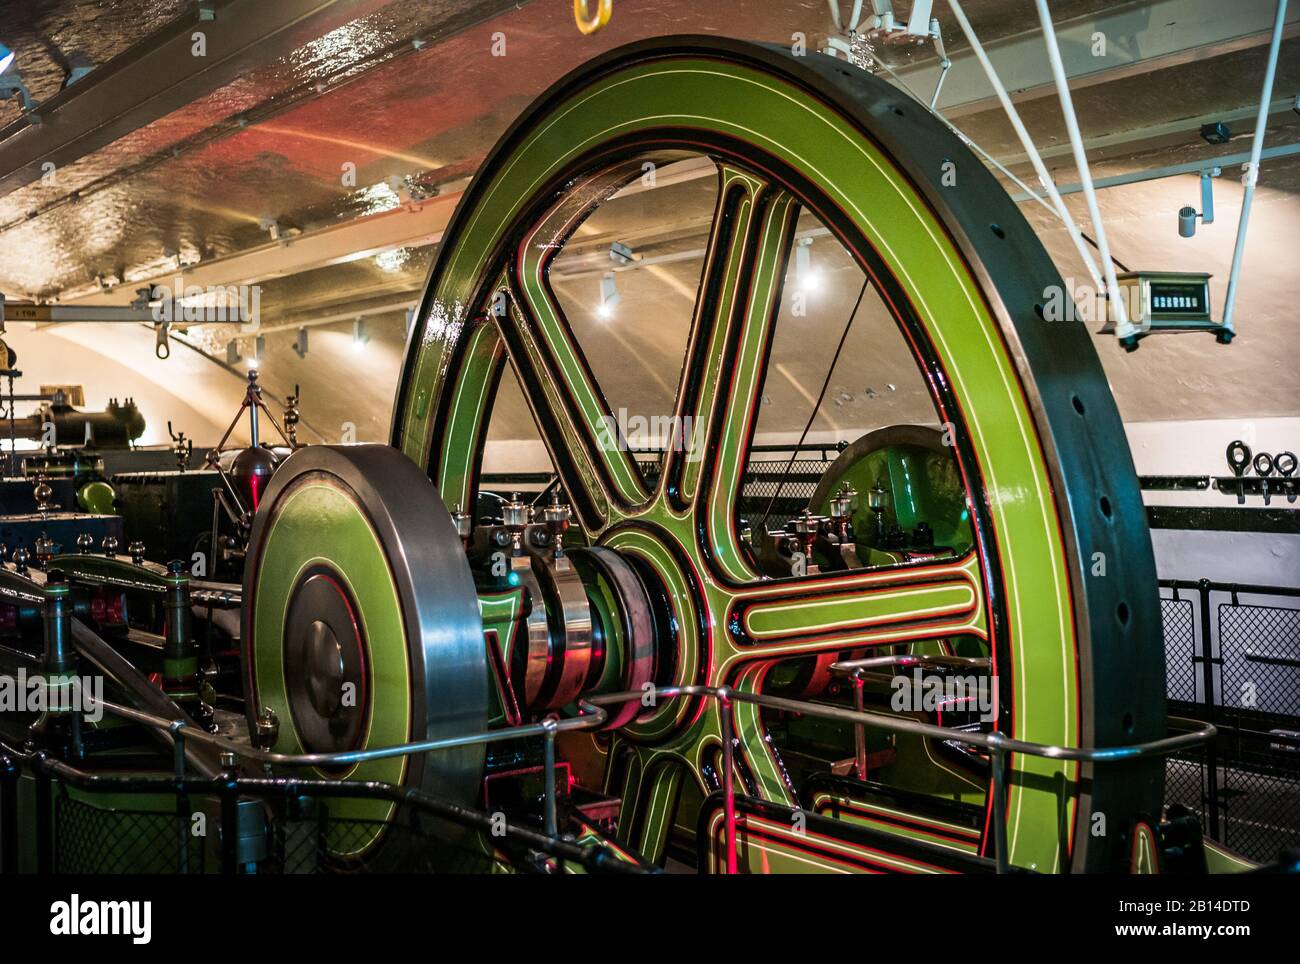 Londres, Angleterre, Royaume-Uni - 24 Mai 2016 : Victorian Tower Bridge Steam Engine Room Interior. technologie du xixe siècle à l'intérieur du fonctionnement intérieur de Banque D'Images